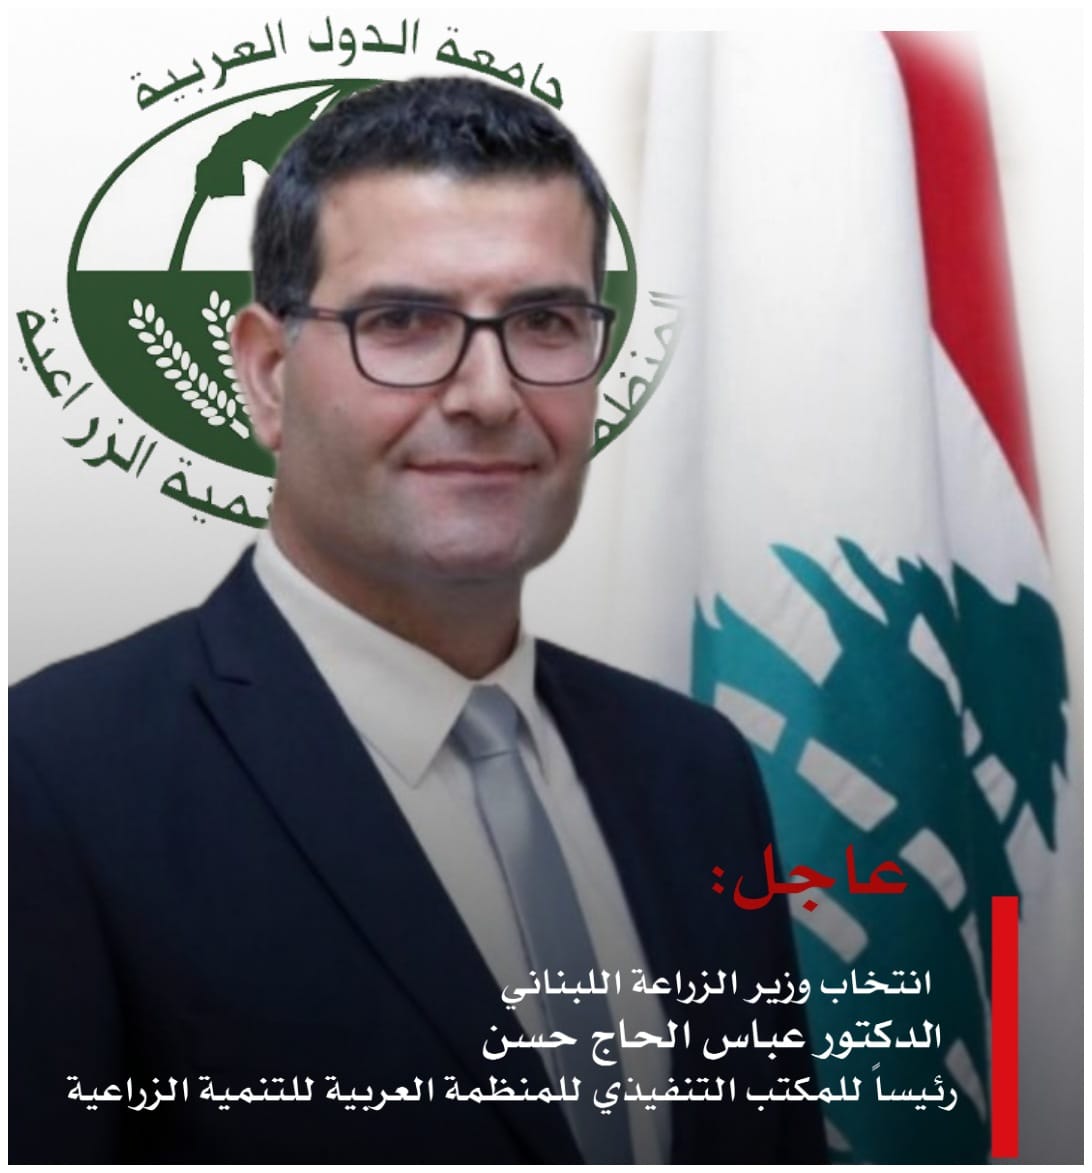 انتخاب وزير الزراعة اللبناني الدكتور عباس الحاج حسن رئيساً للمجلس التنفيذي للمنظمة العربية للتنمية الزراعية